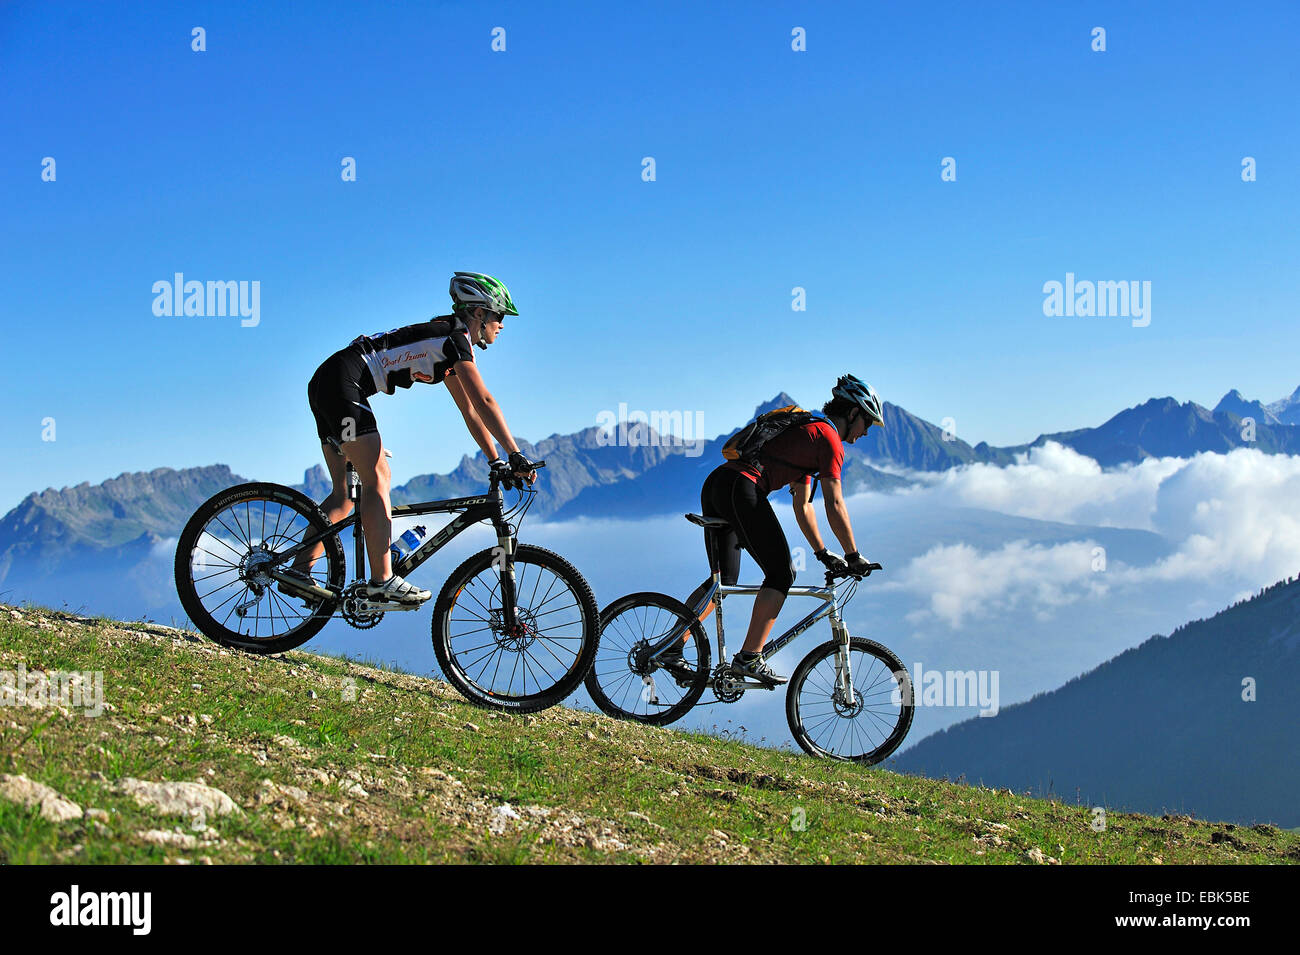 Deux mountain biker on mountain meadow appréciant les paysages de montagne, France, Savoie, La Plagne Banque D'Images